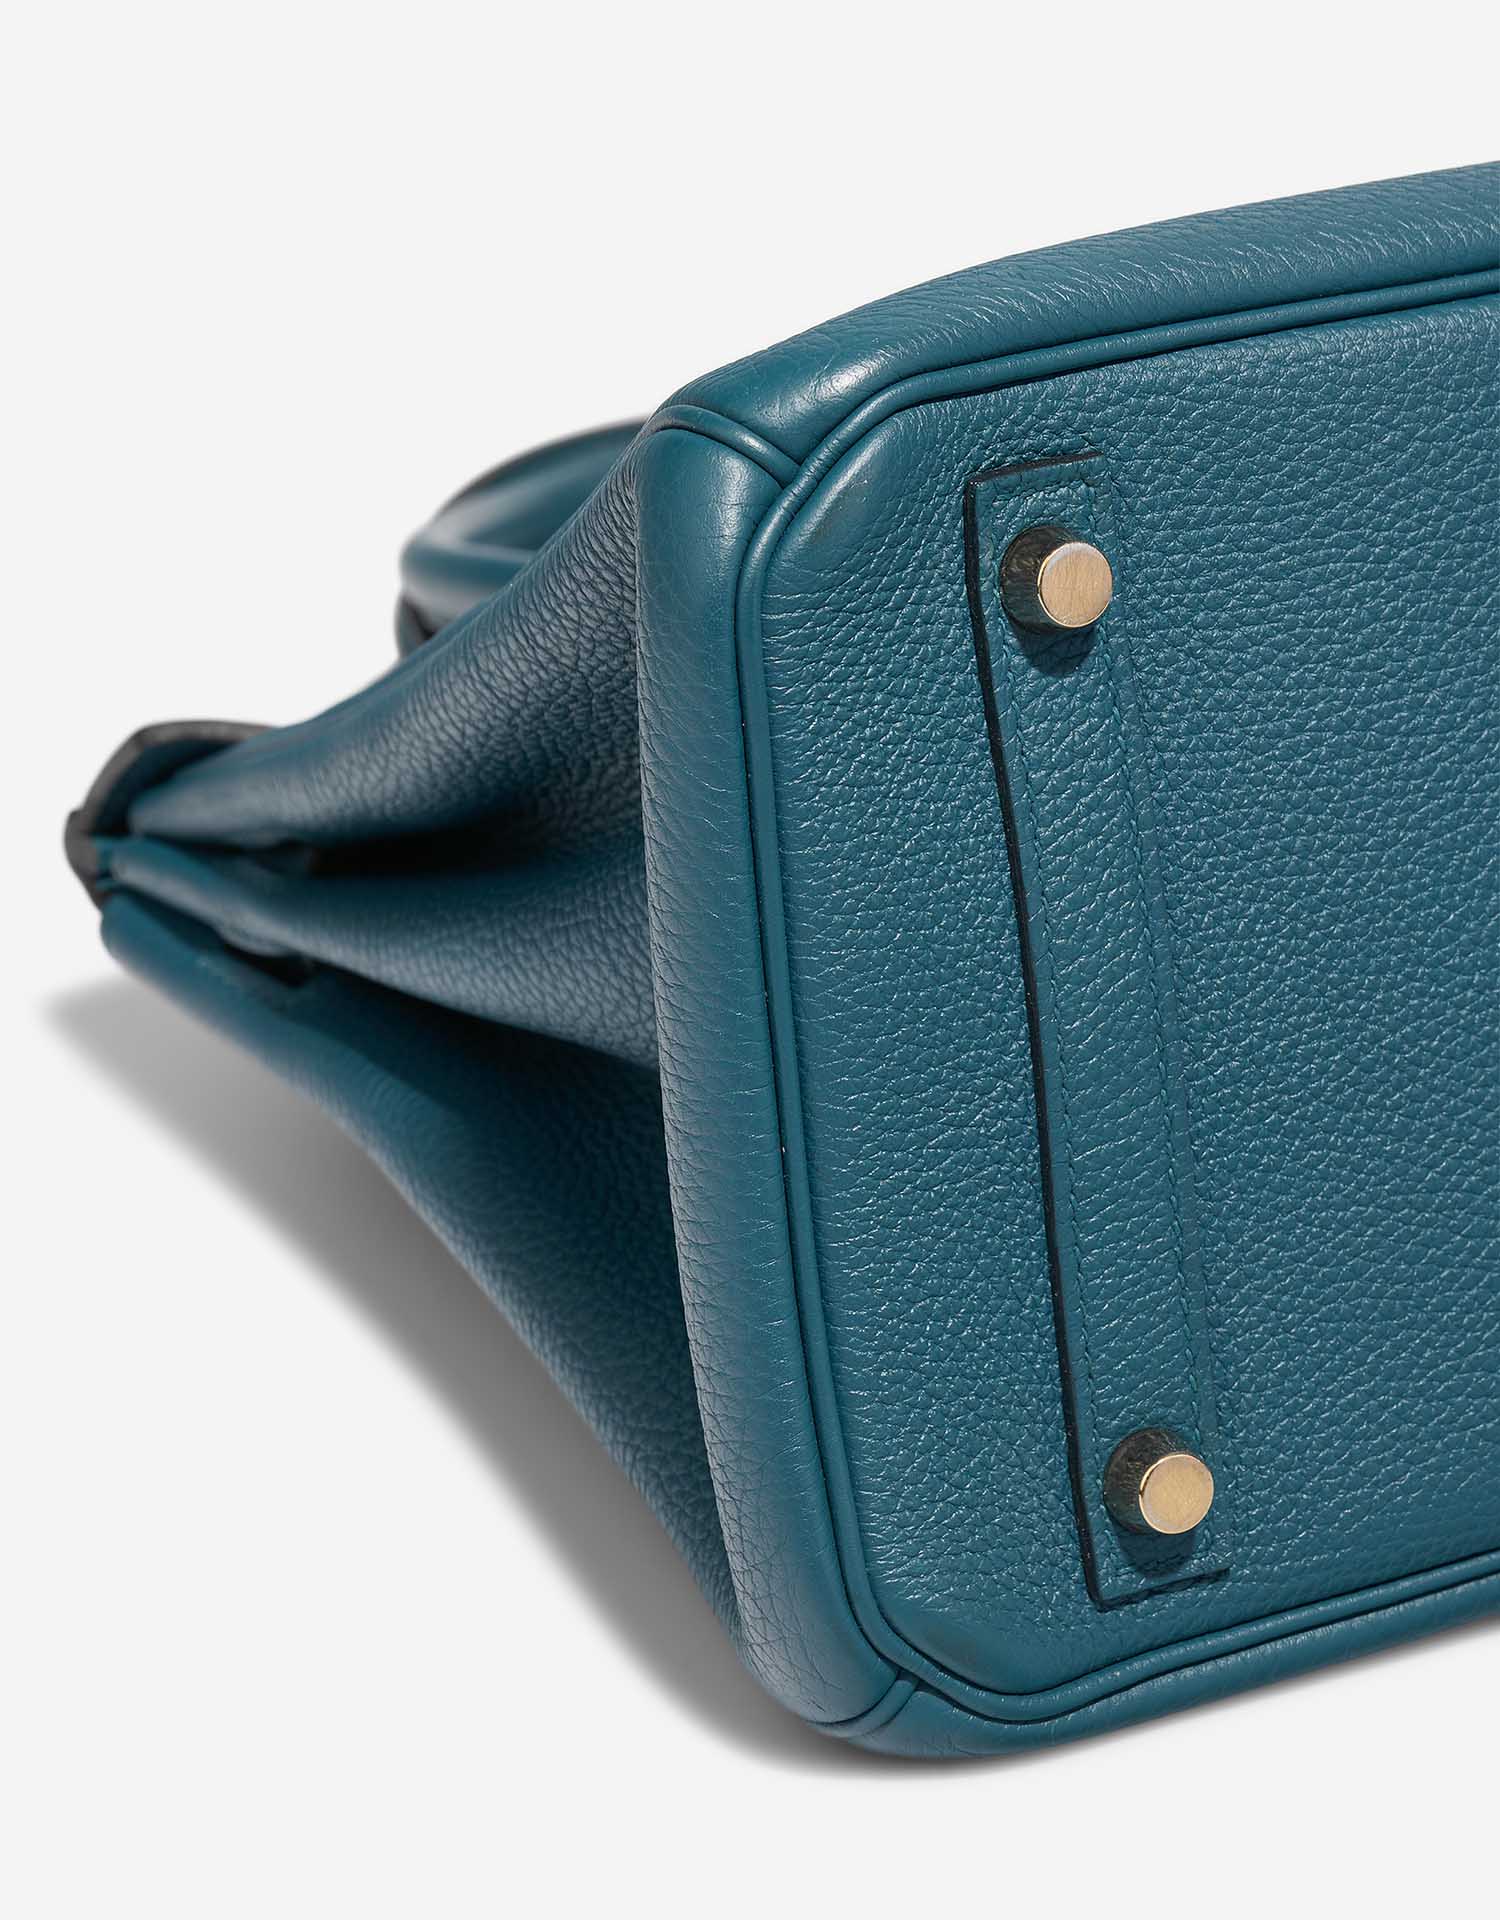 Hermès Birkin 30 Colvert Gebrauchsspuren | Verkaufen Sie Ihre Designertasche auf Saclab.com